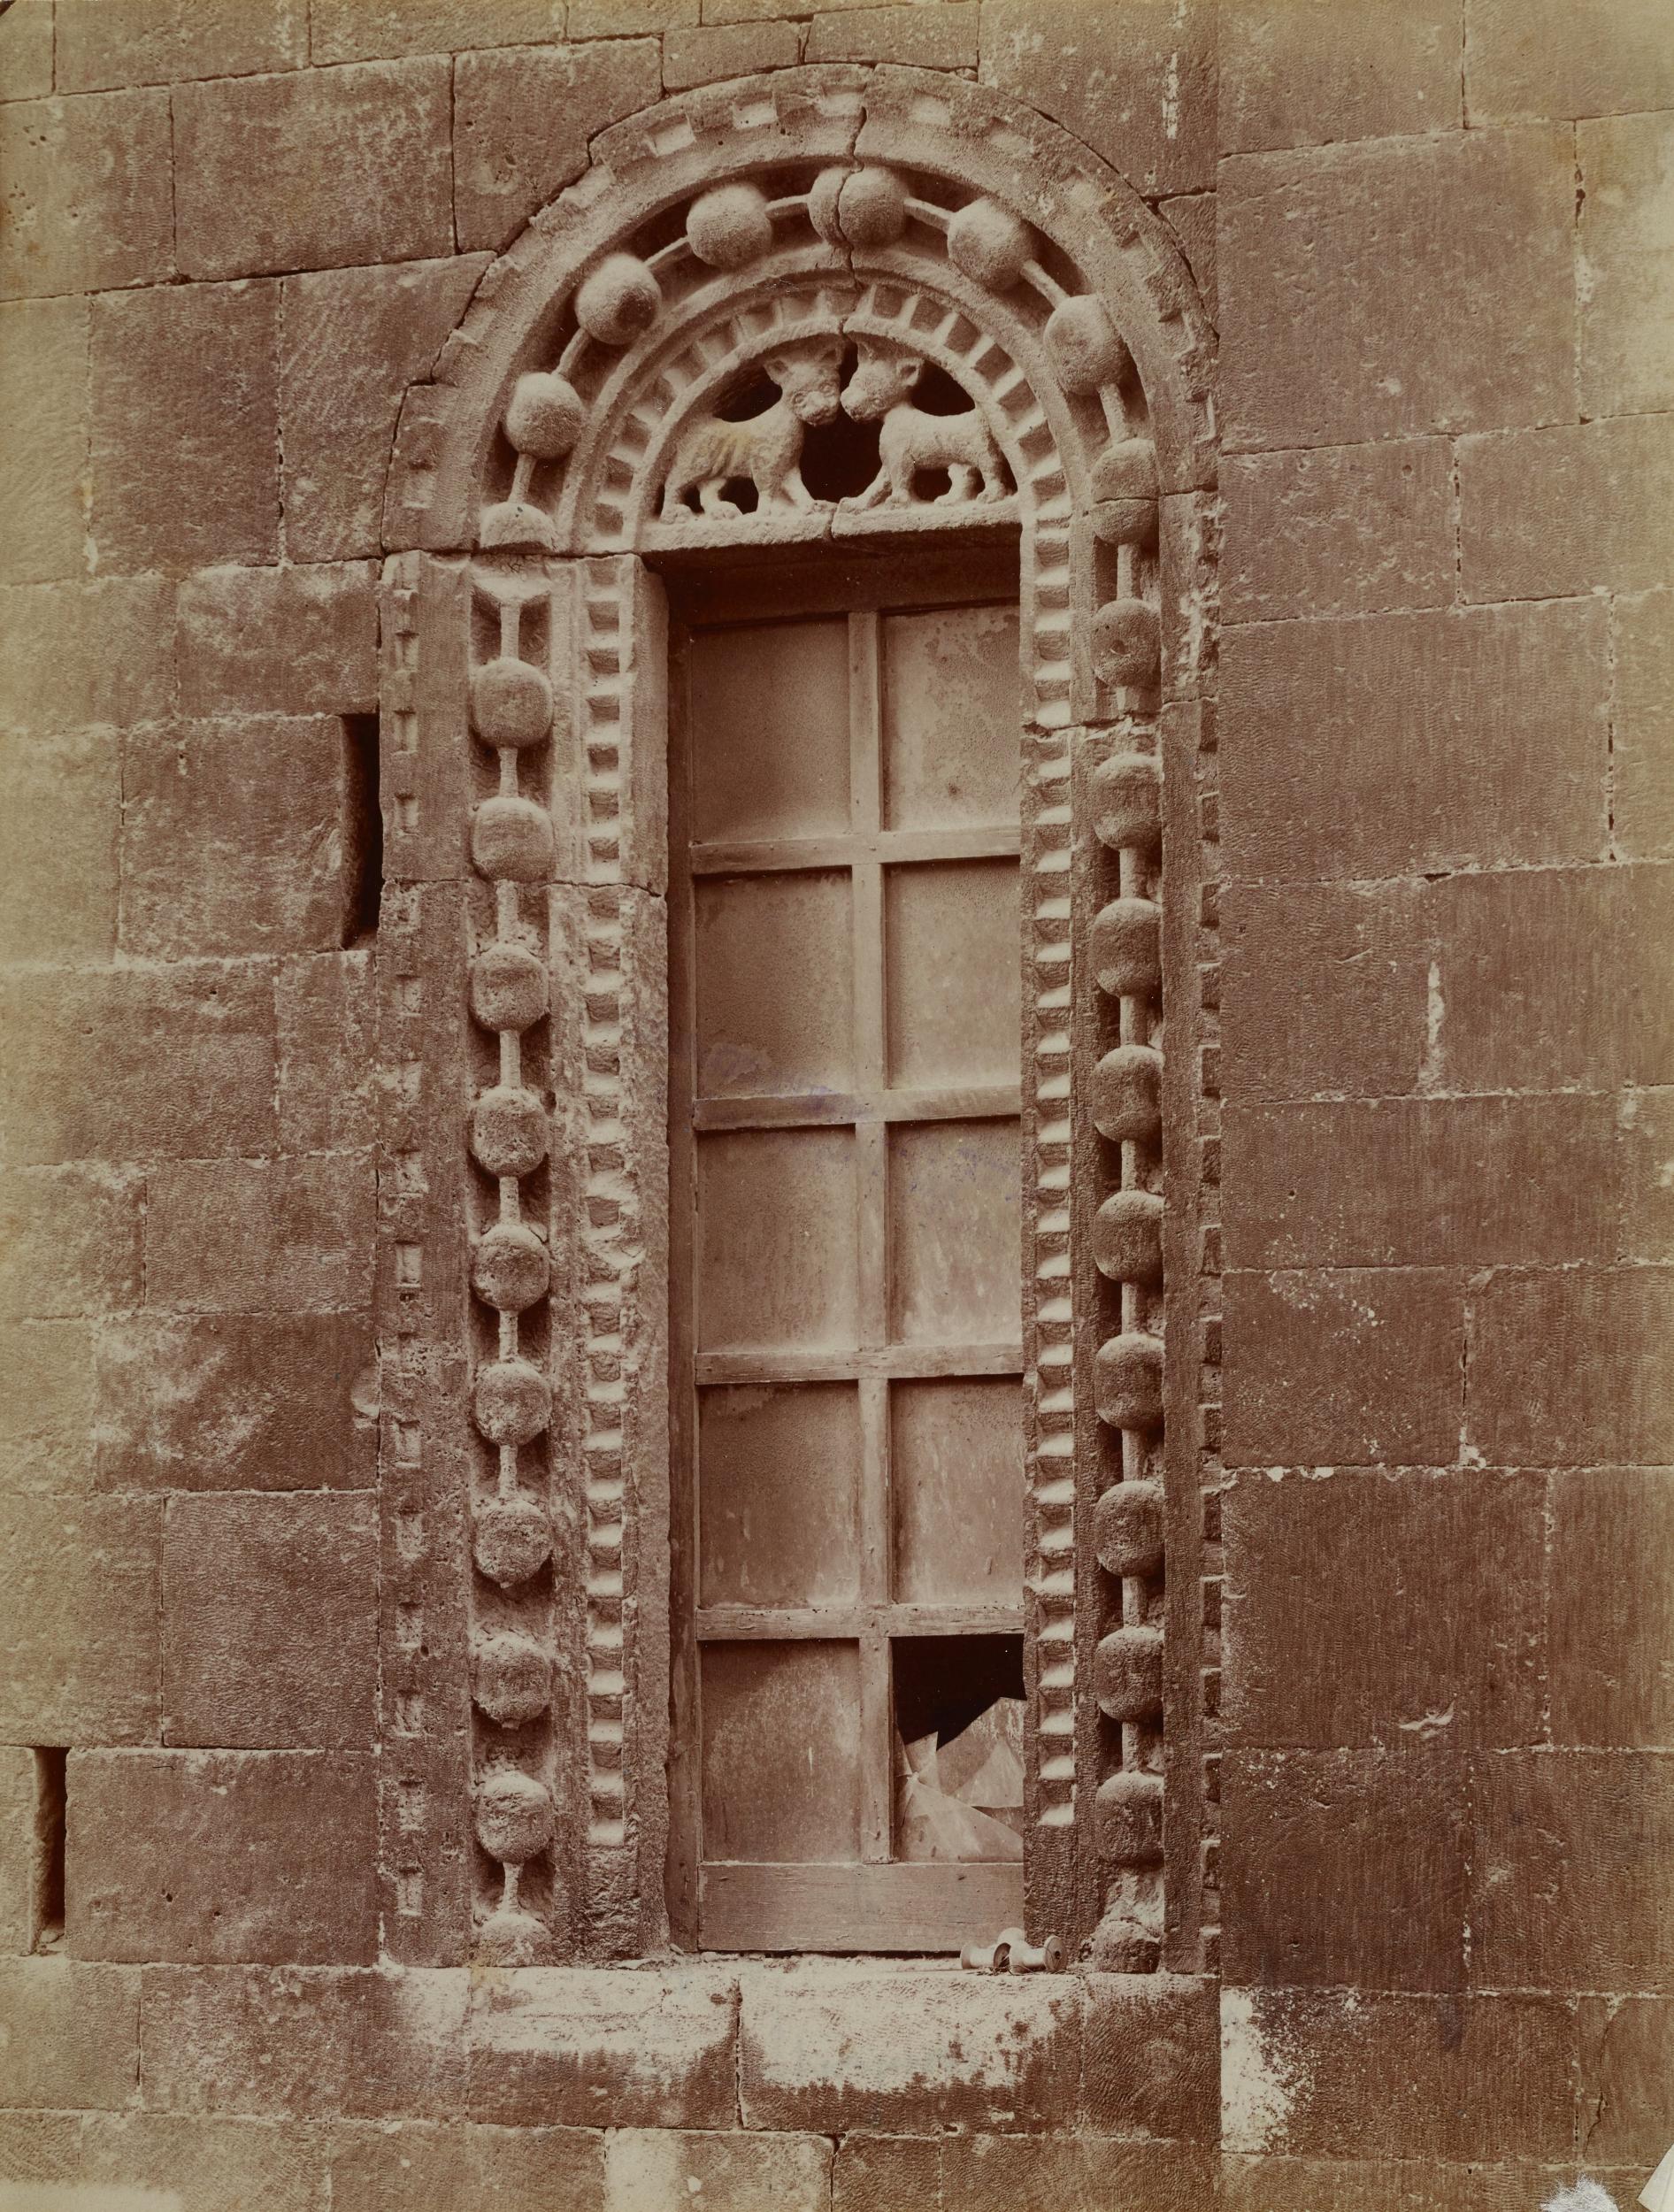 Fotografo non identificato, Bari - Chiesa di S. Gregorio, finestra della facciata, 1876-1900, albumina/carta, MPI136713